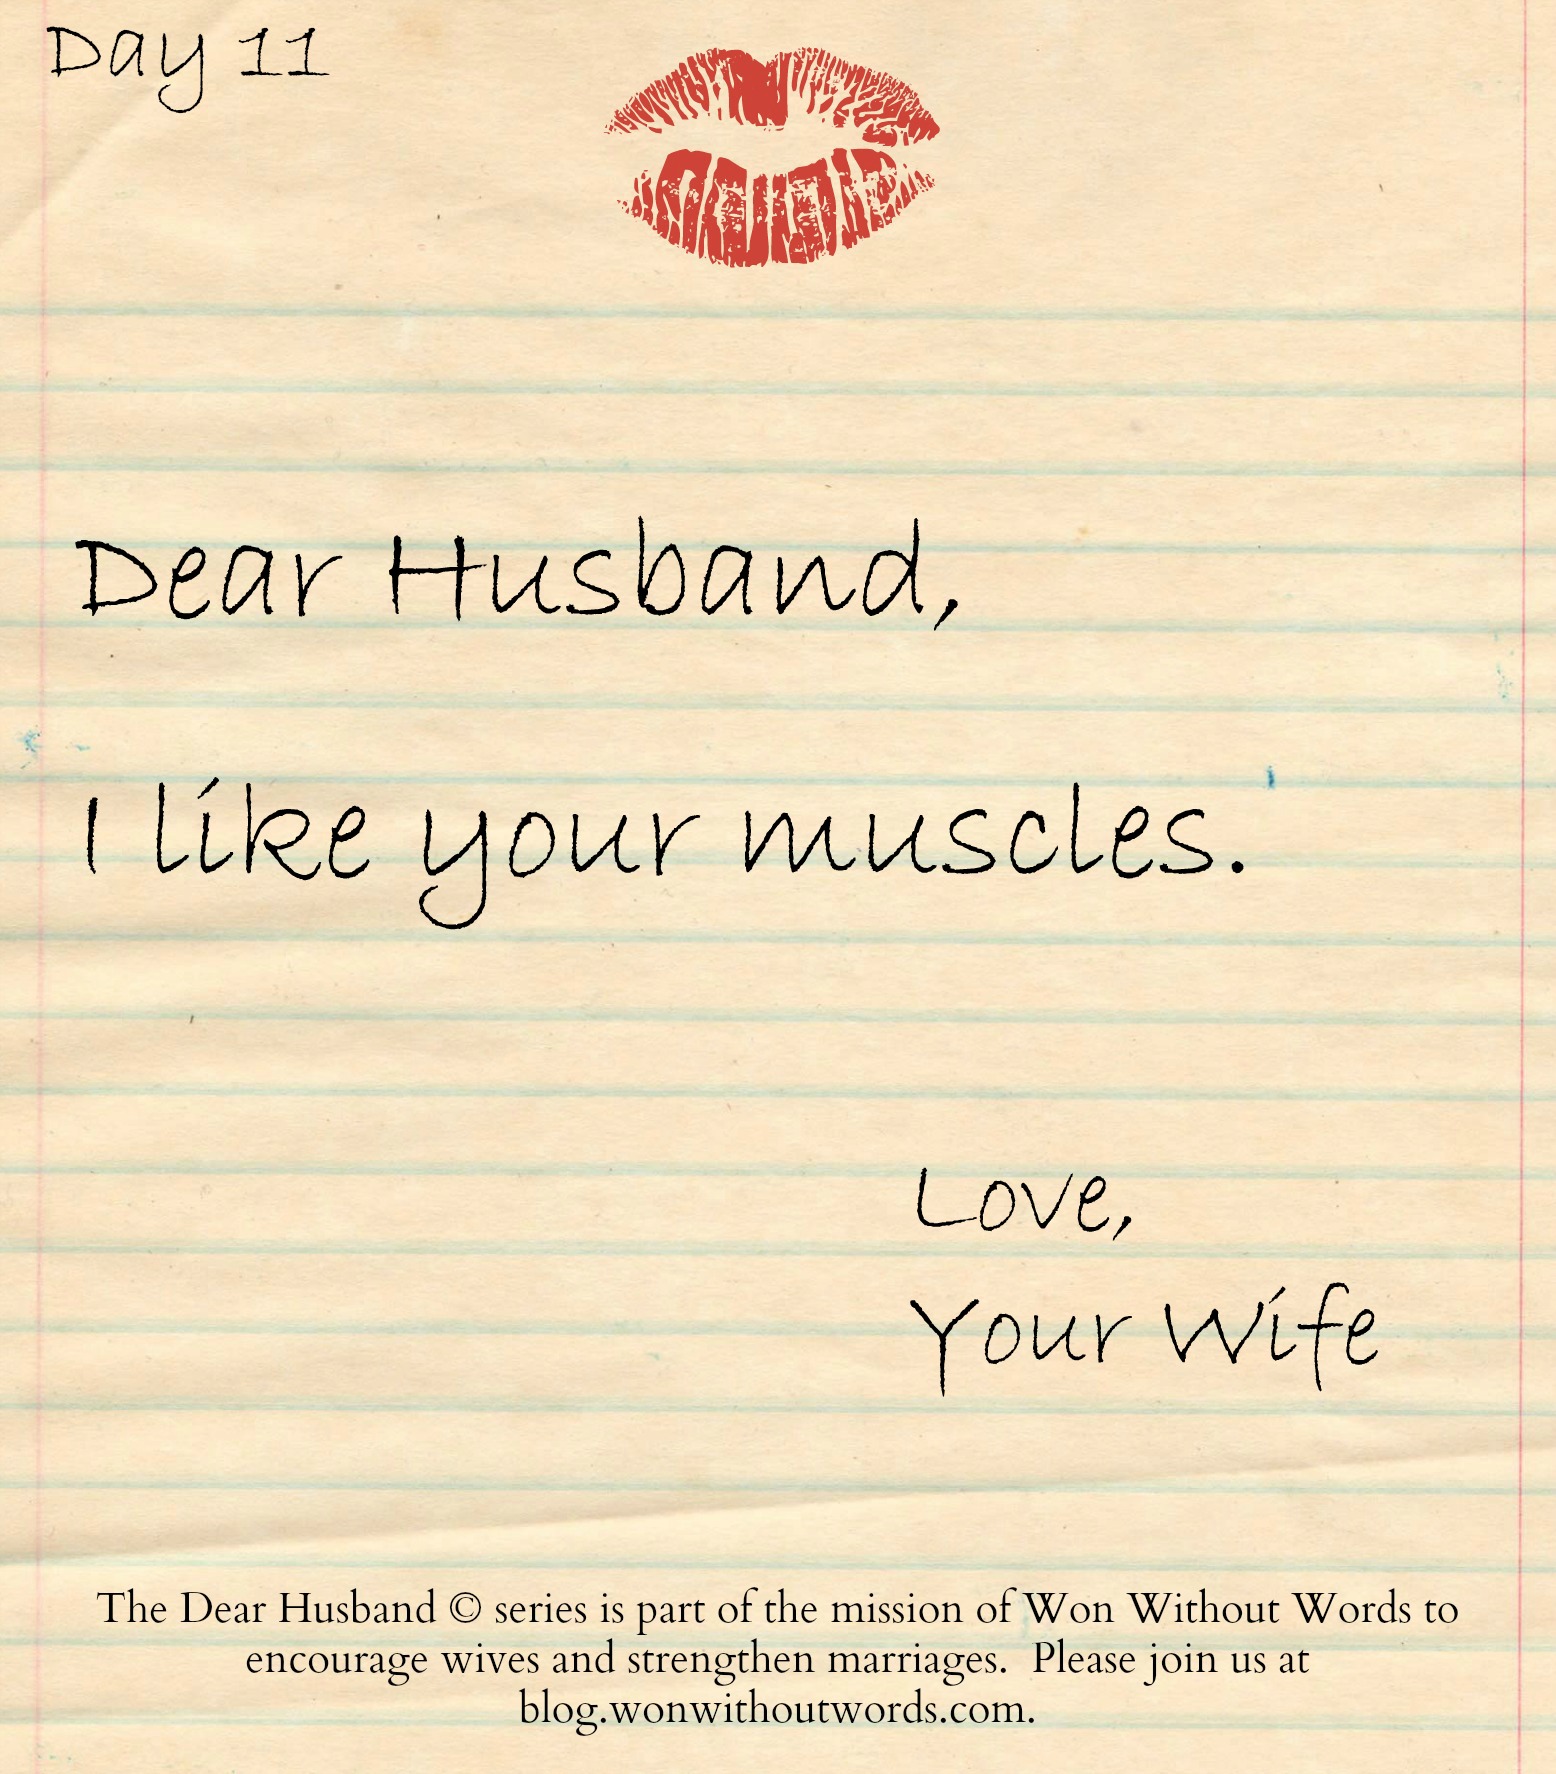 Dear Husband series; blog.wonwithoutwords.com